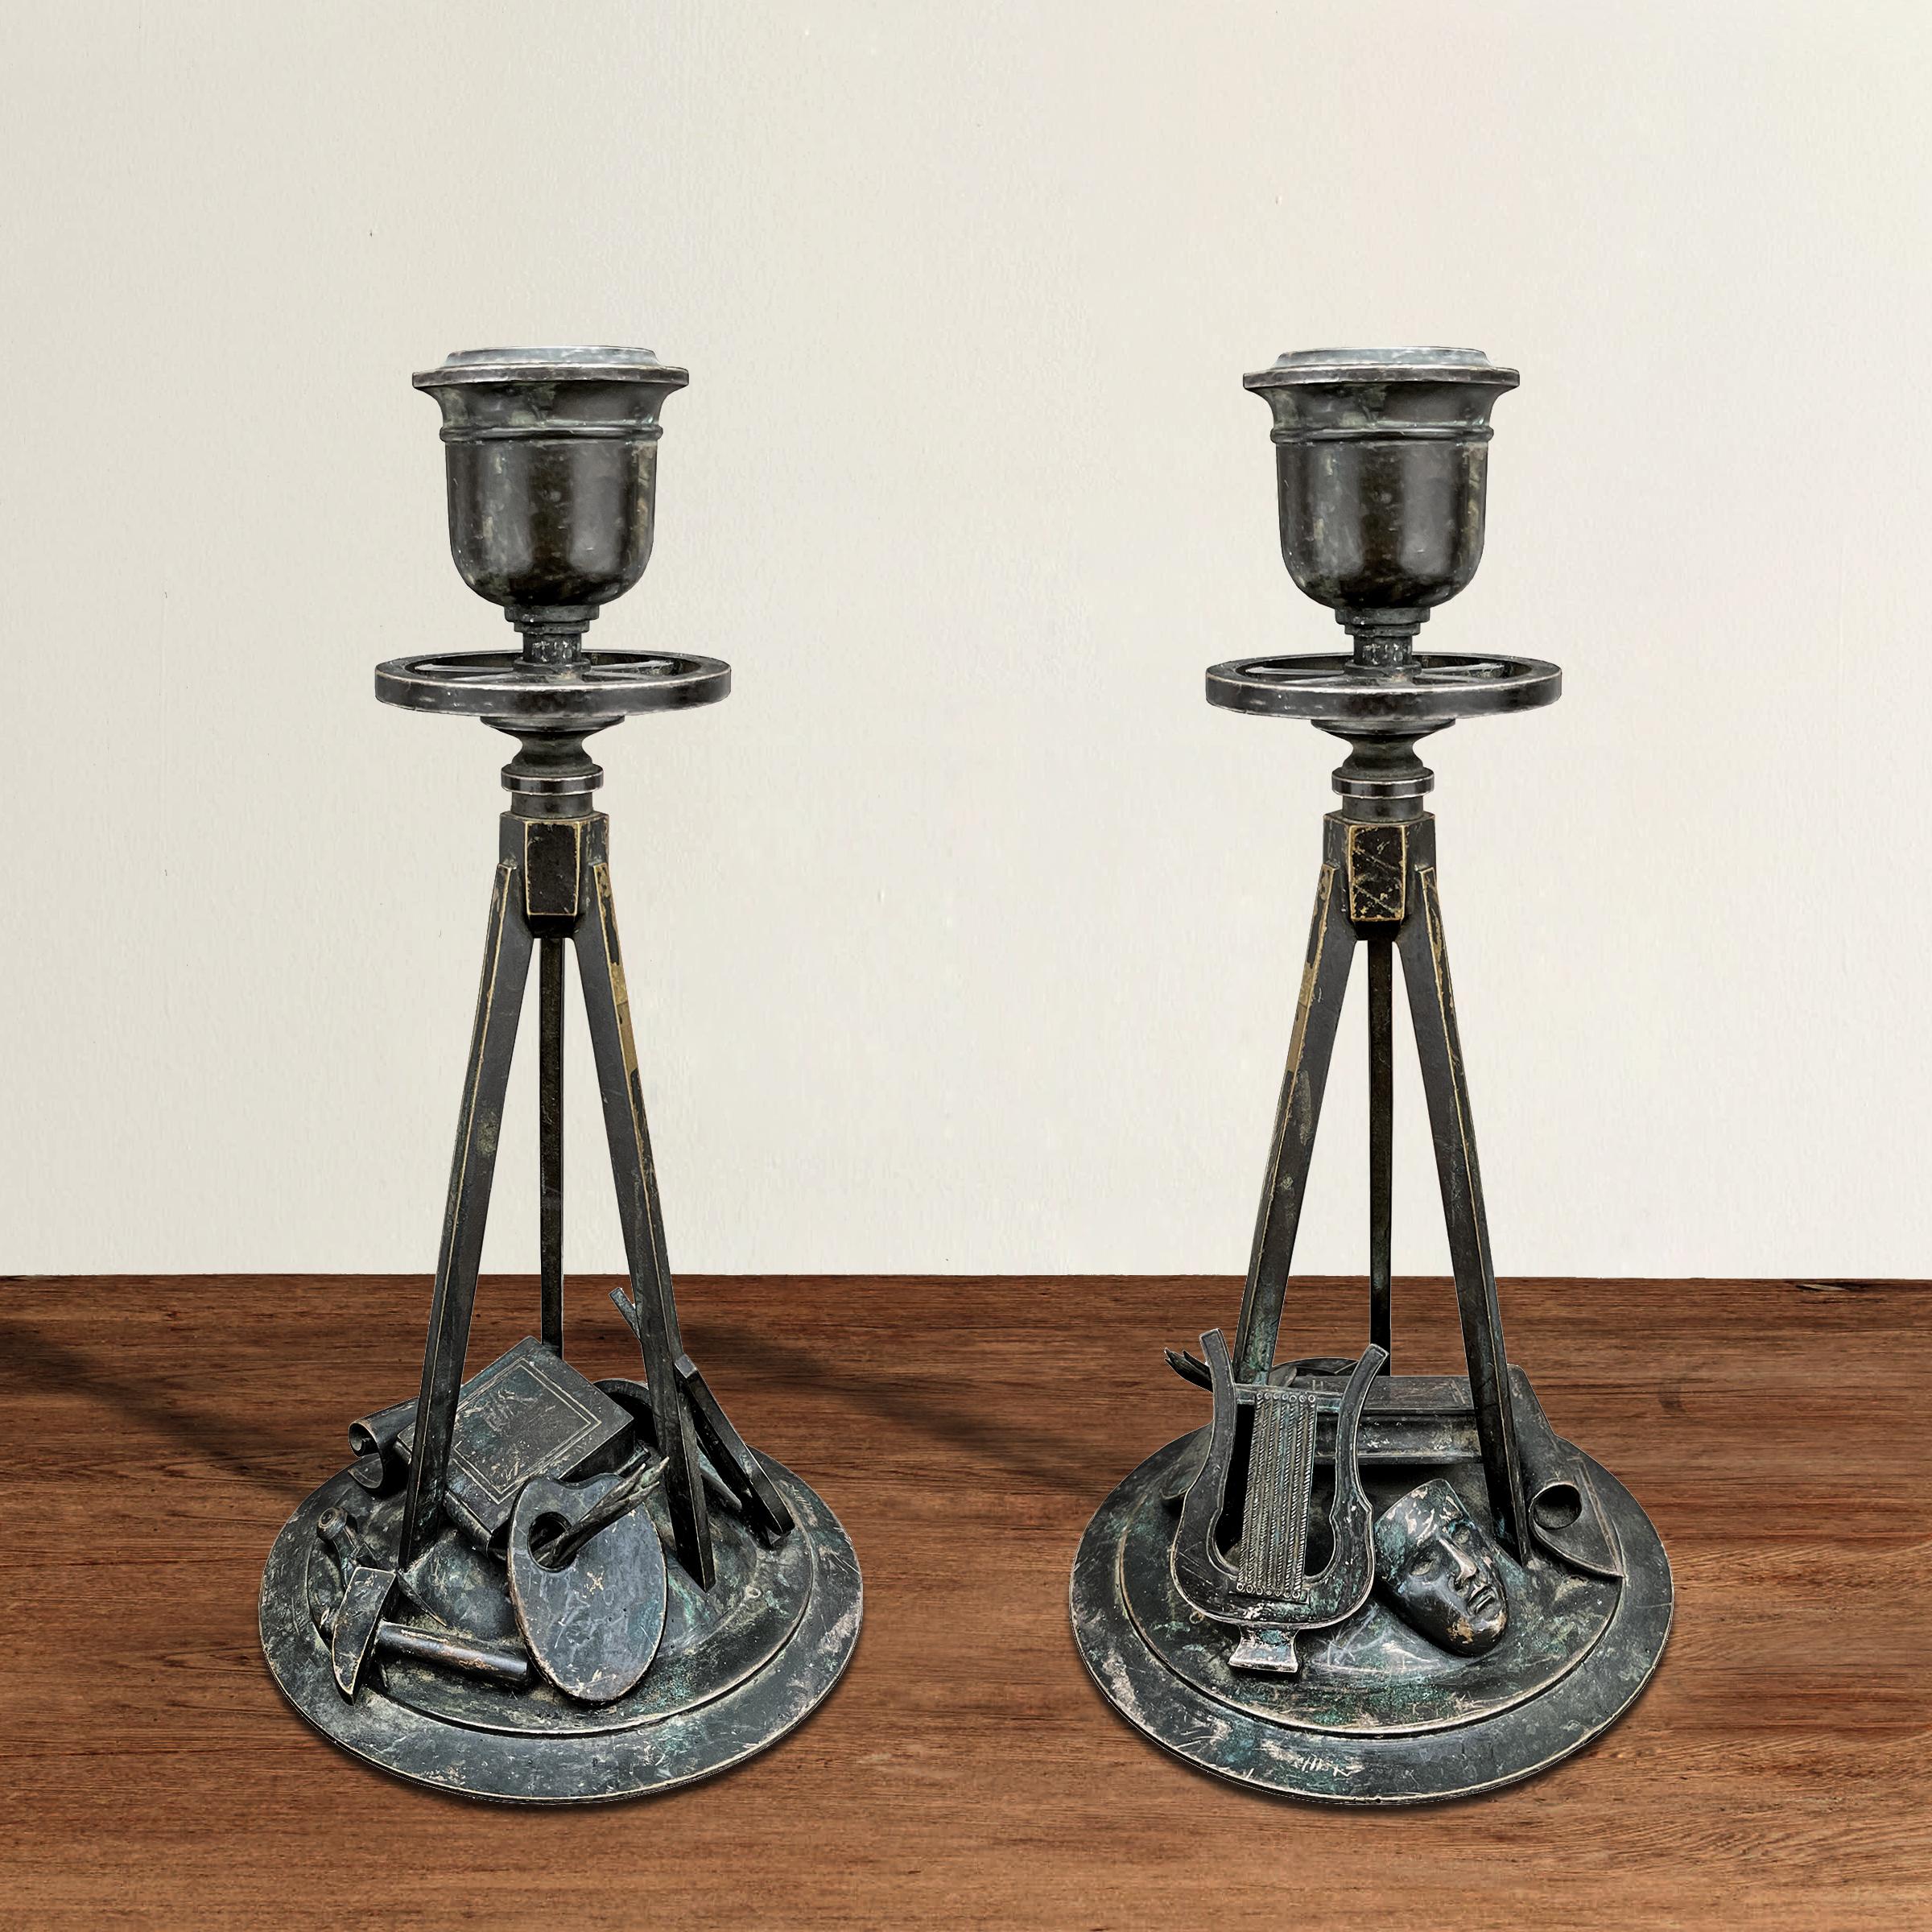 Une incroyable paire de chandeliers en bronze Empire français du début du XIXe siècle célébrant les arts avec des palettes de peintres et des pinceaux moulés et appliqués individuellement, des marteaux et des compas de sculpteurs, des livres